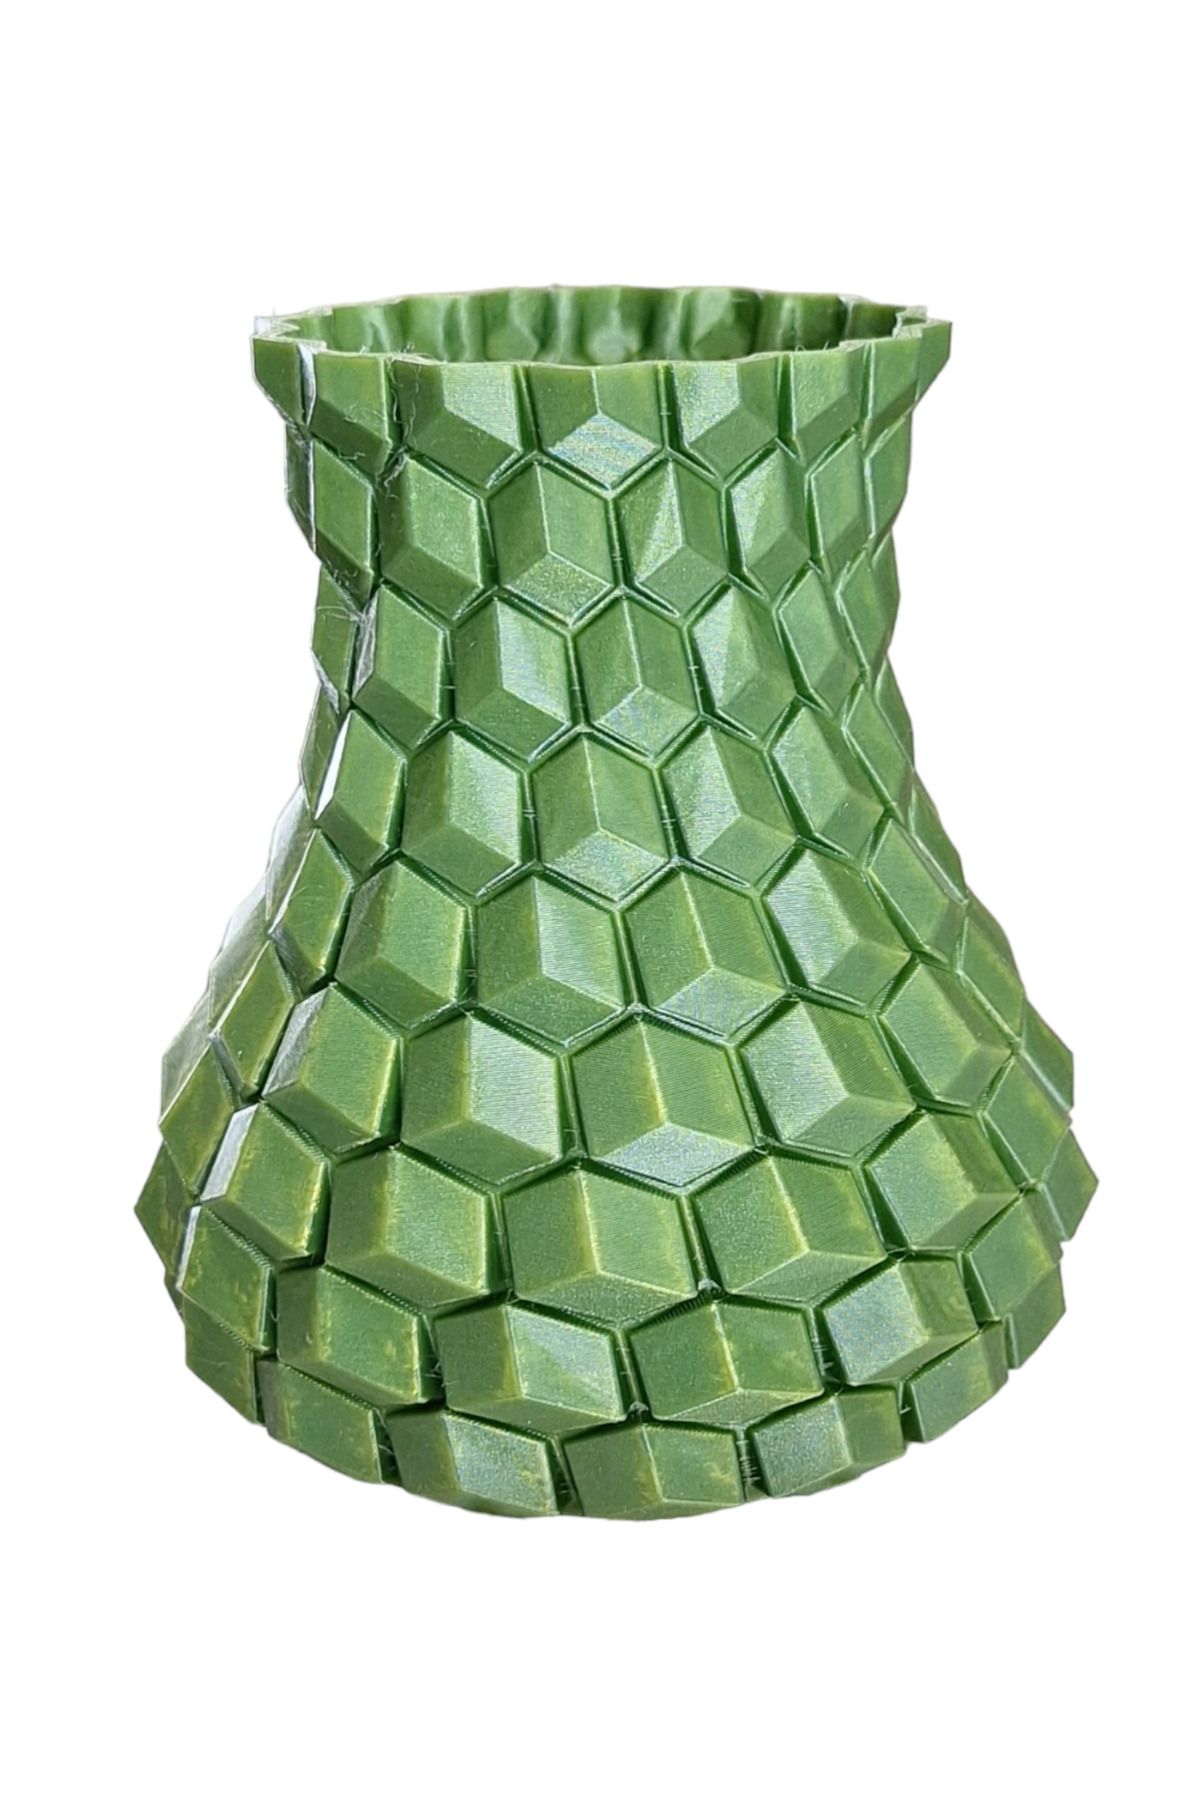 FeritSo Geometrik Desenli Vazo